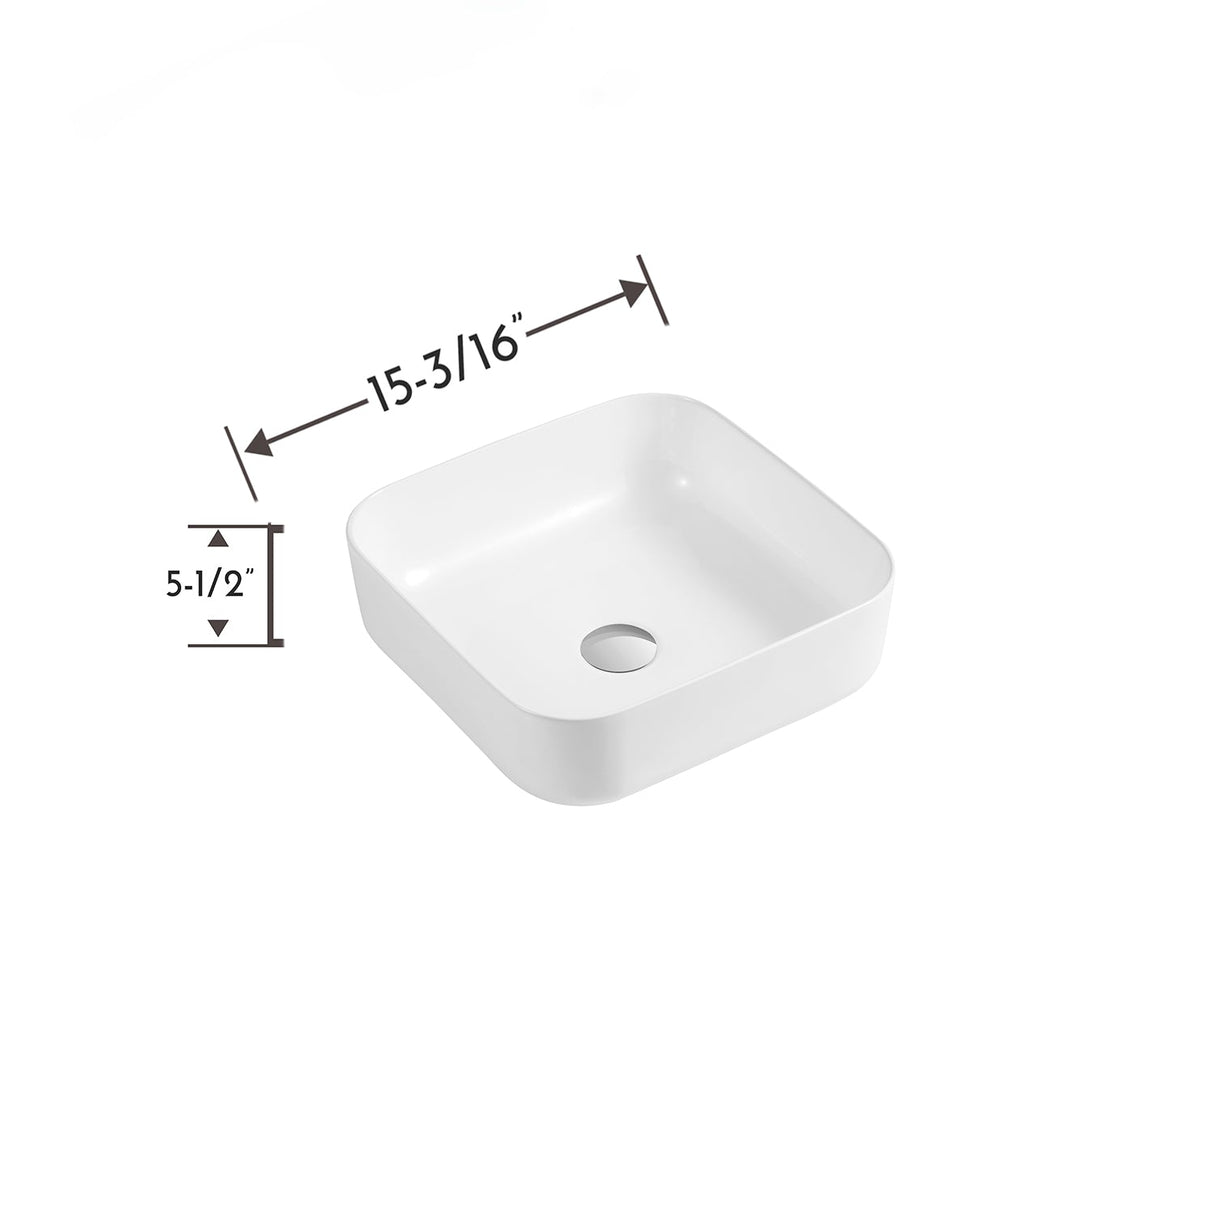 DAX Ceramic Square Bathroom Vessel Basin, 15", White Matte DAX-CL1282-WM